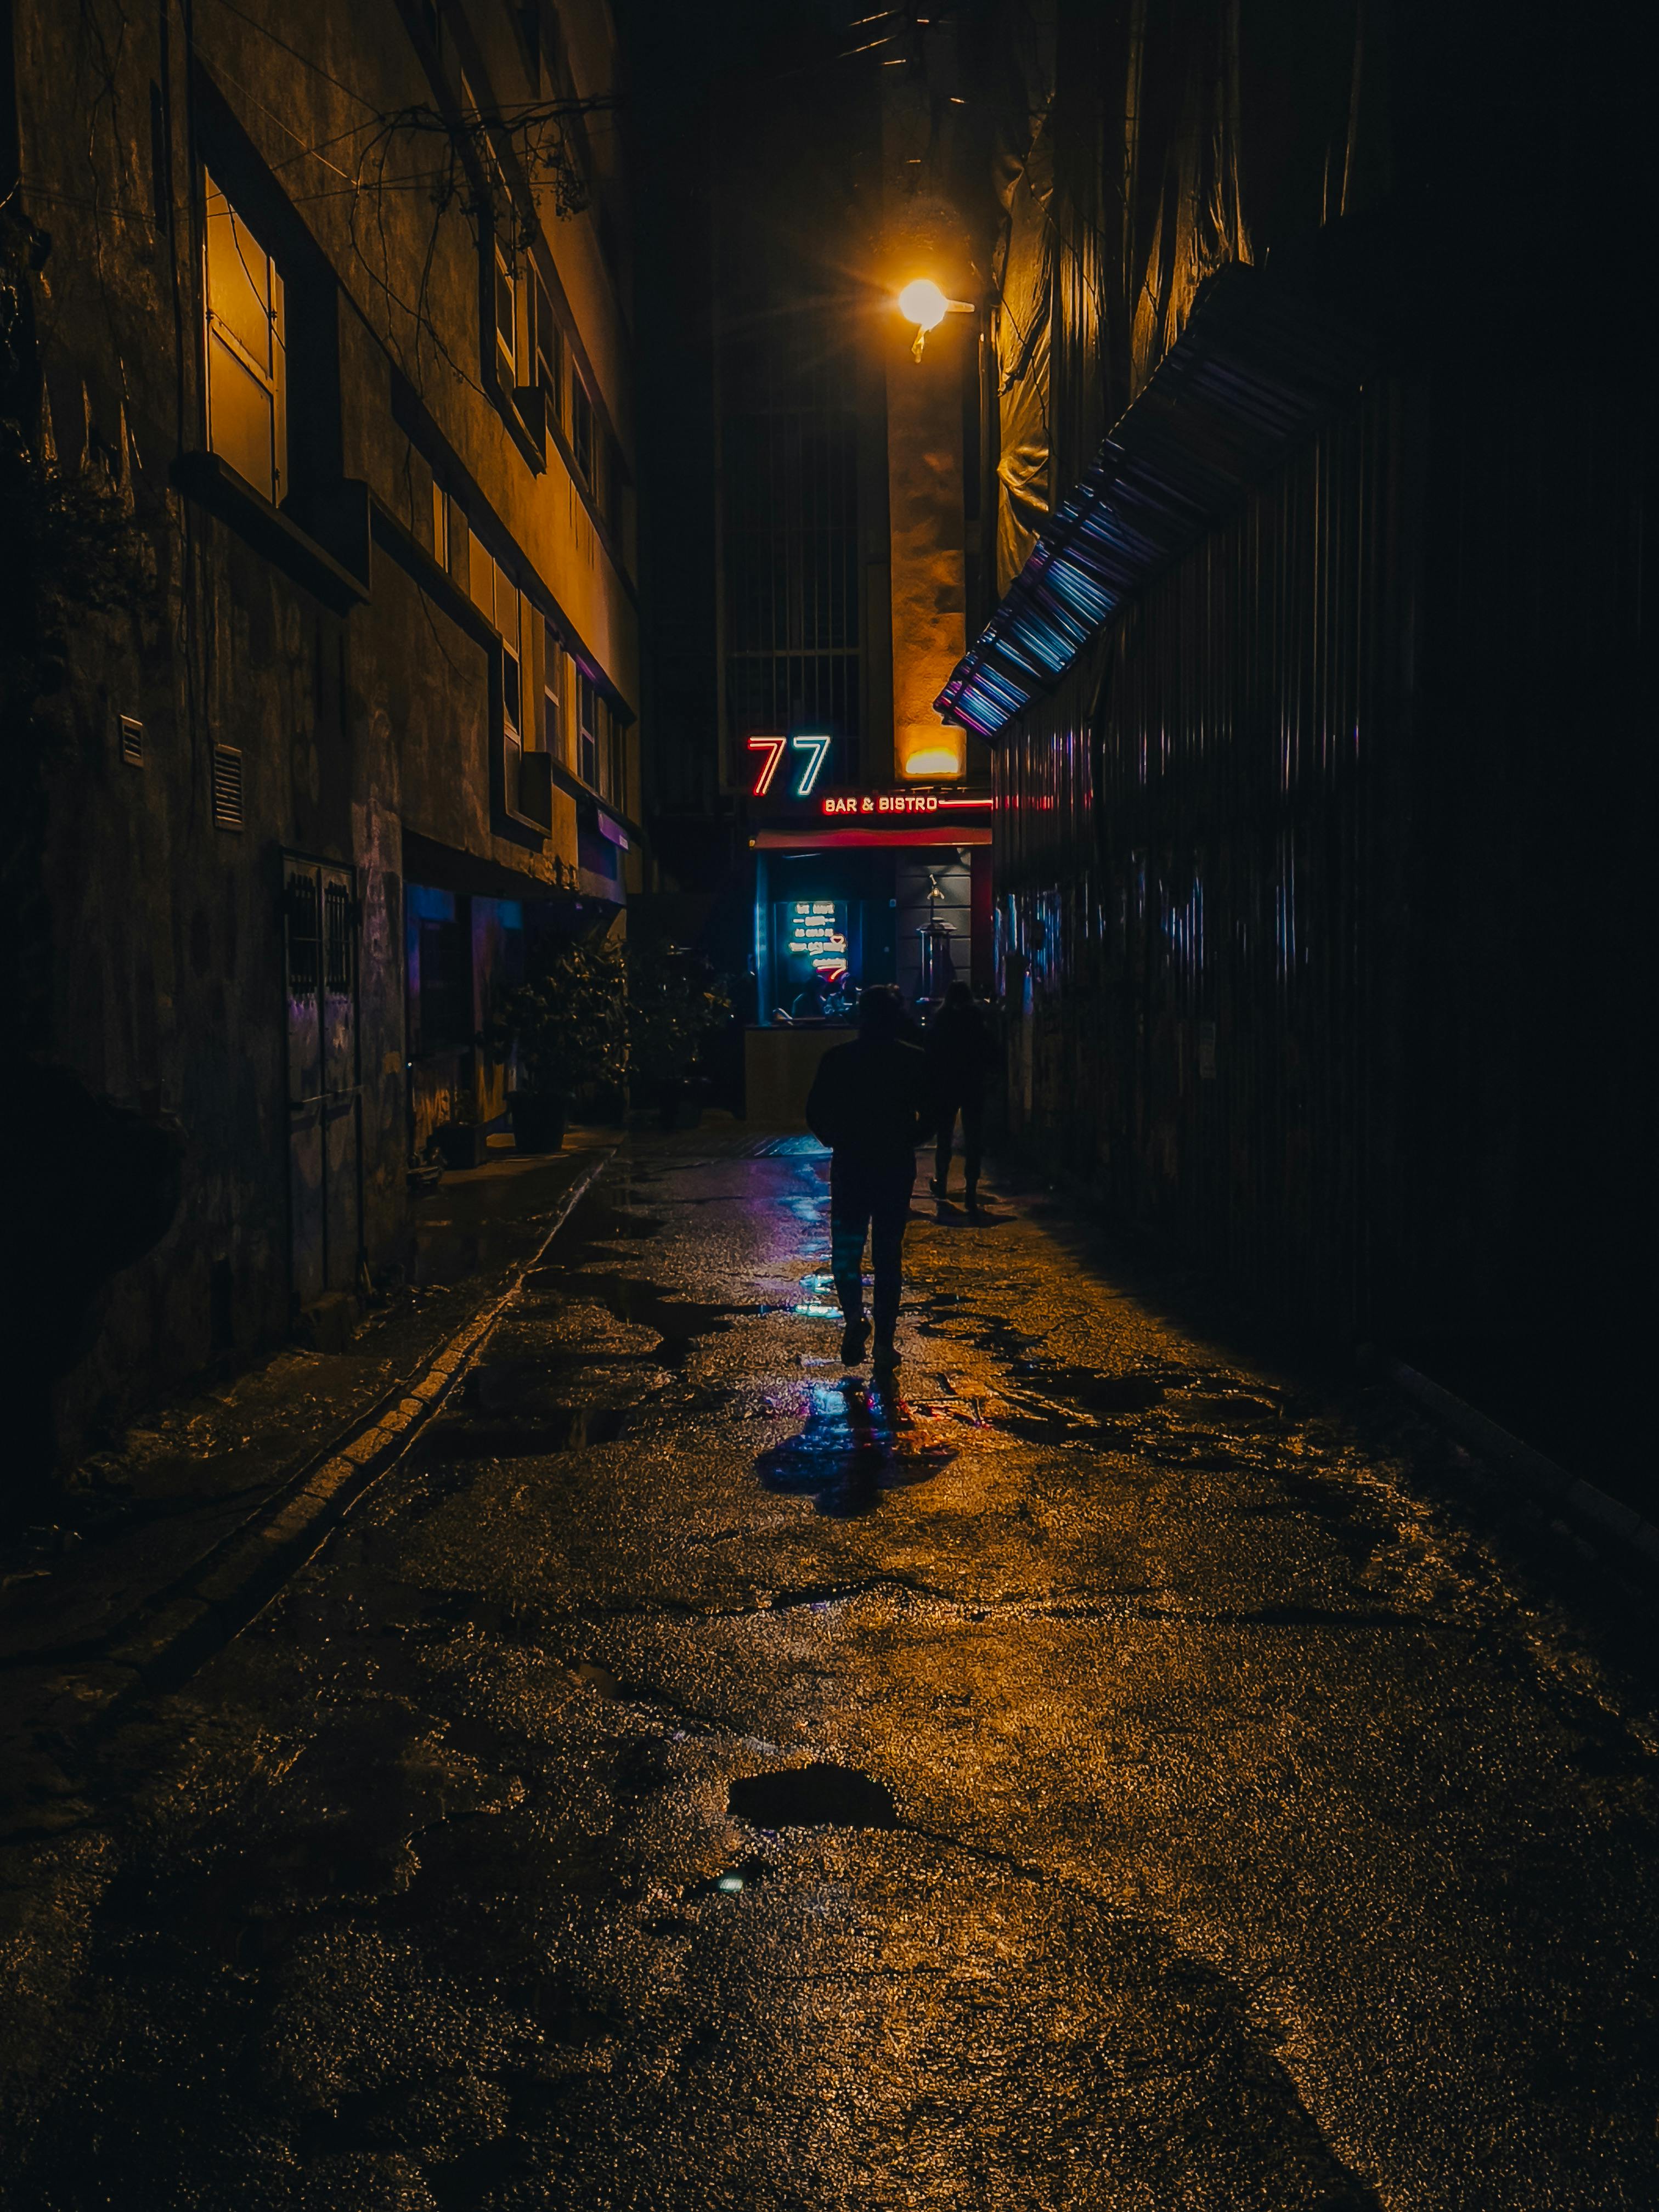 Đường phố tối: Sự kết hợp giữa ánh đèn và bóng tối sẽ khiến cho những hình ảnh về đường phố tối trở nên rất đặc biệt. Hãy xem những bức ảnh này để tìm hiểu một nét đẹp khác lạ của thành phố vào ban đêm.